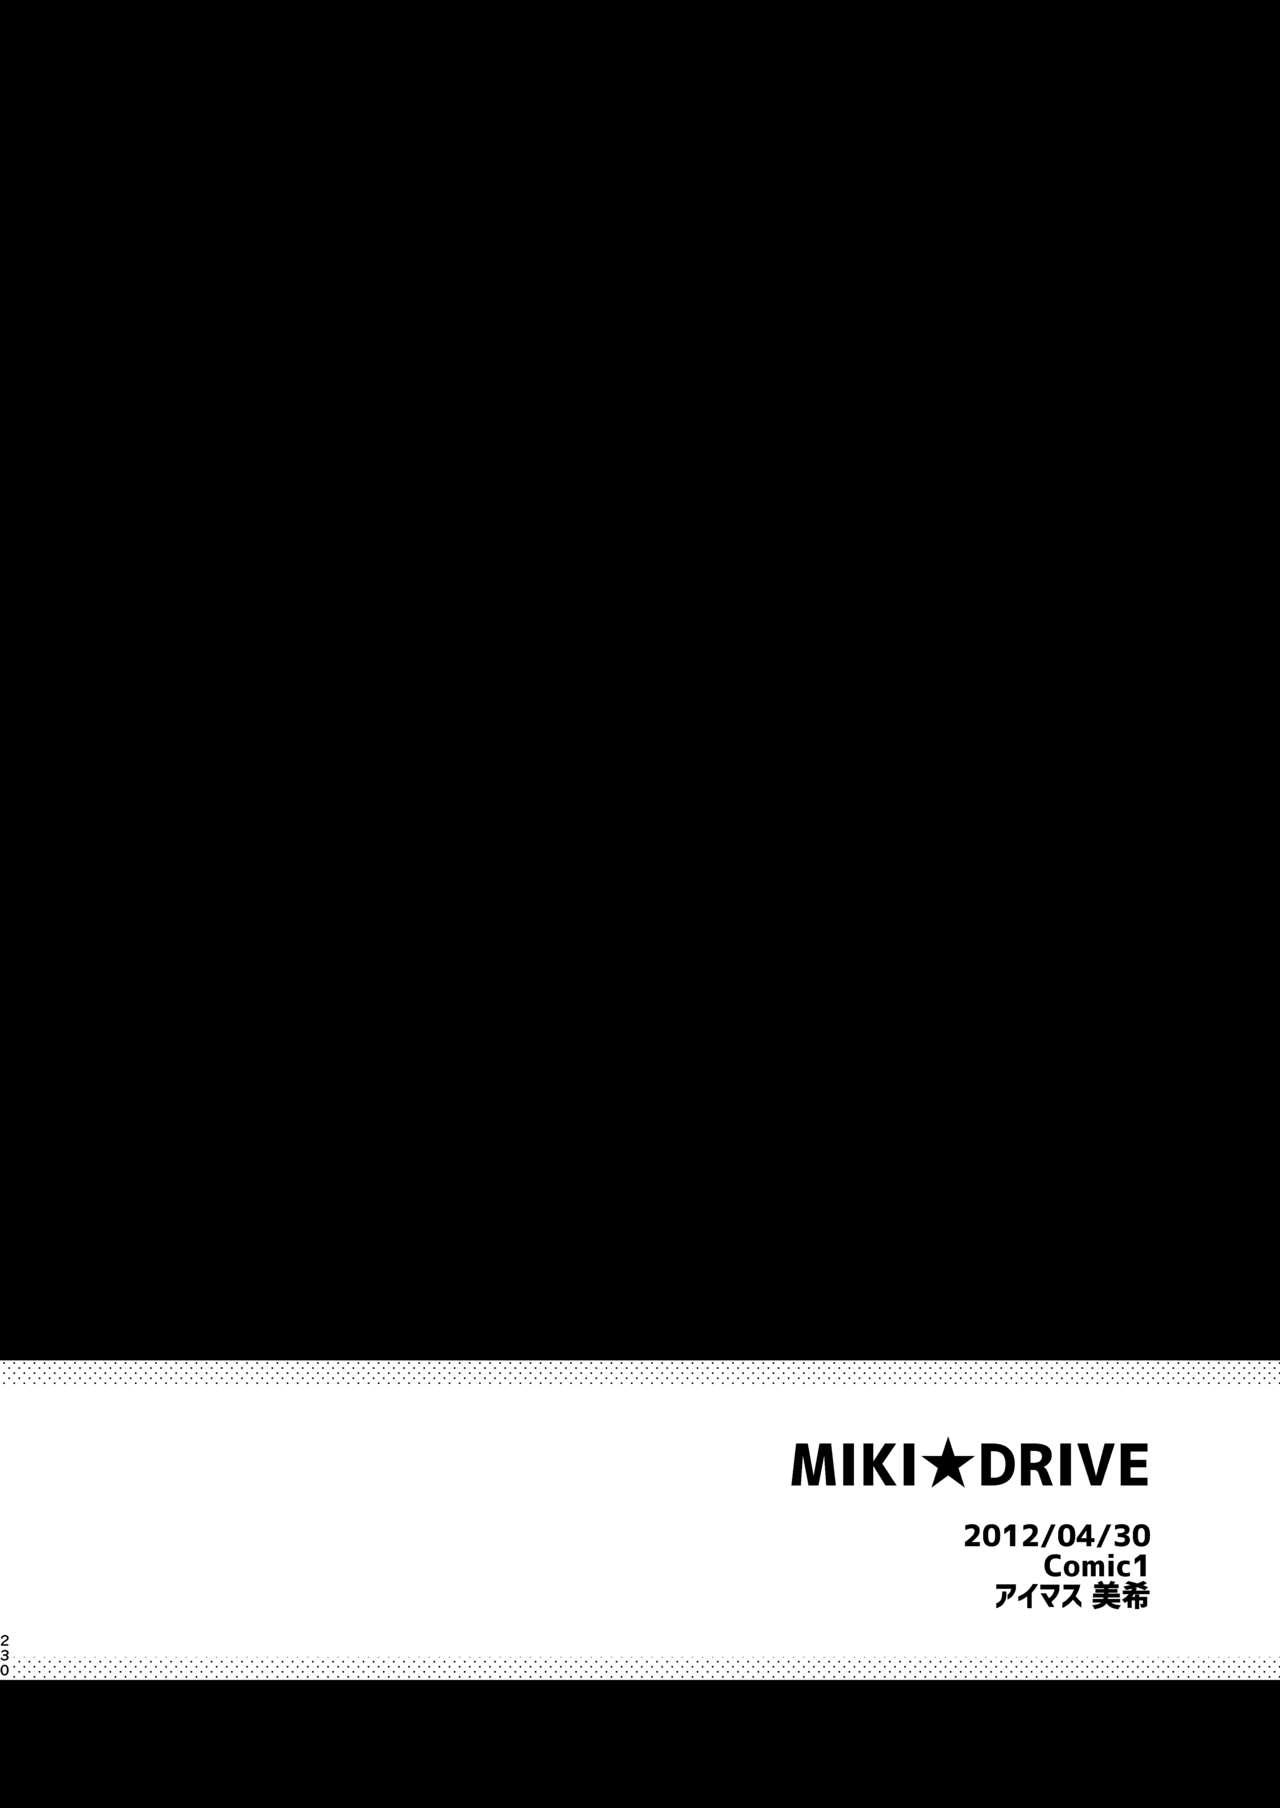 MIKI DRIVE 1